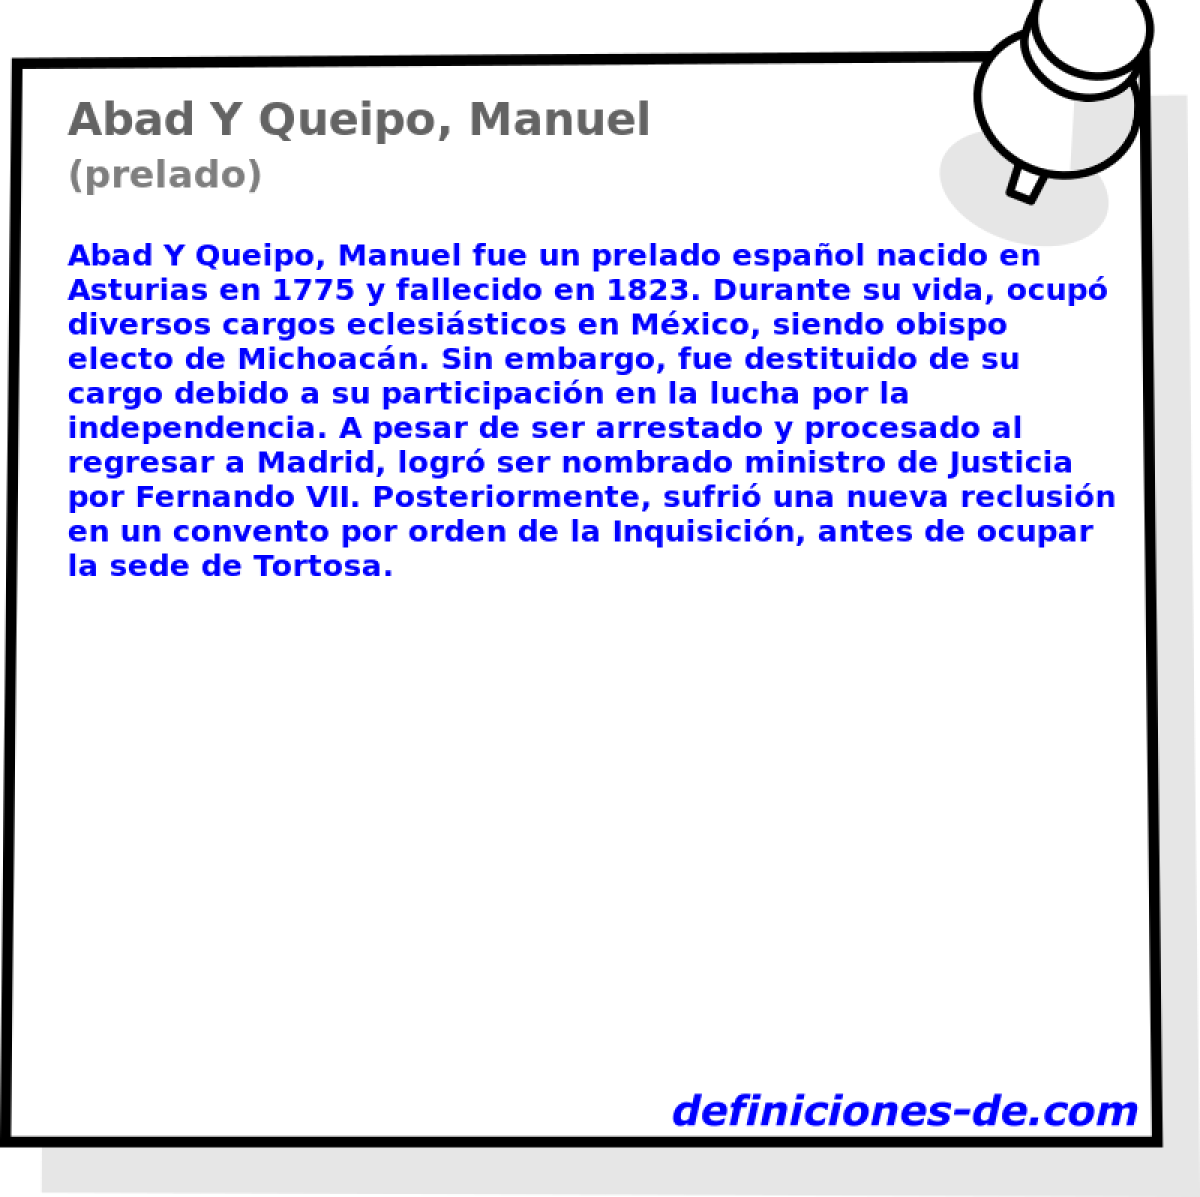 Abad Y Queipo, Manuel (prelado)